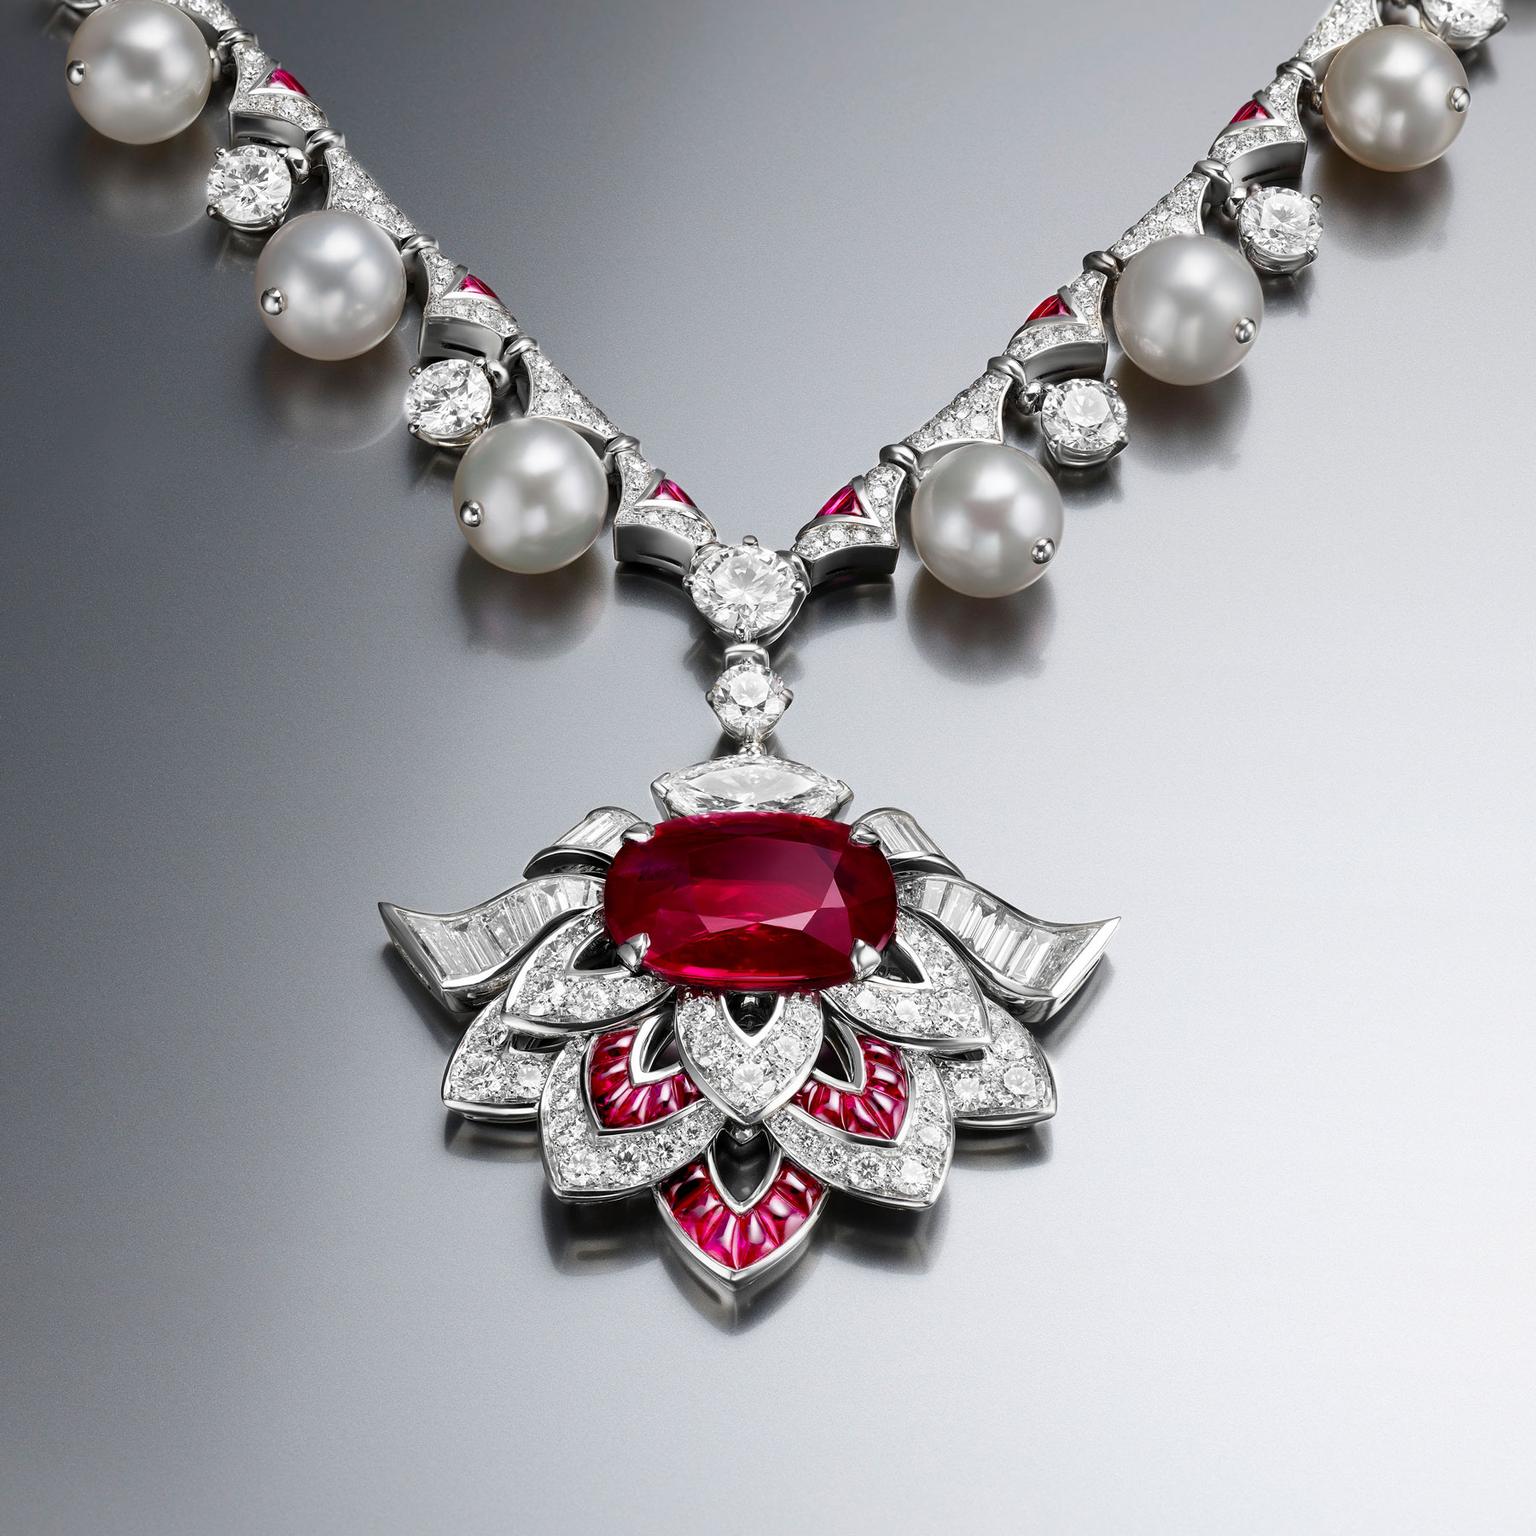 Bulgari Festa Cuore di Roma Mozambique ruby high jewellery necklace 